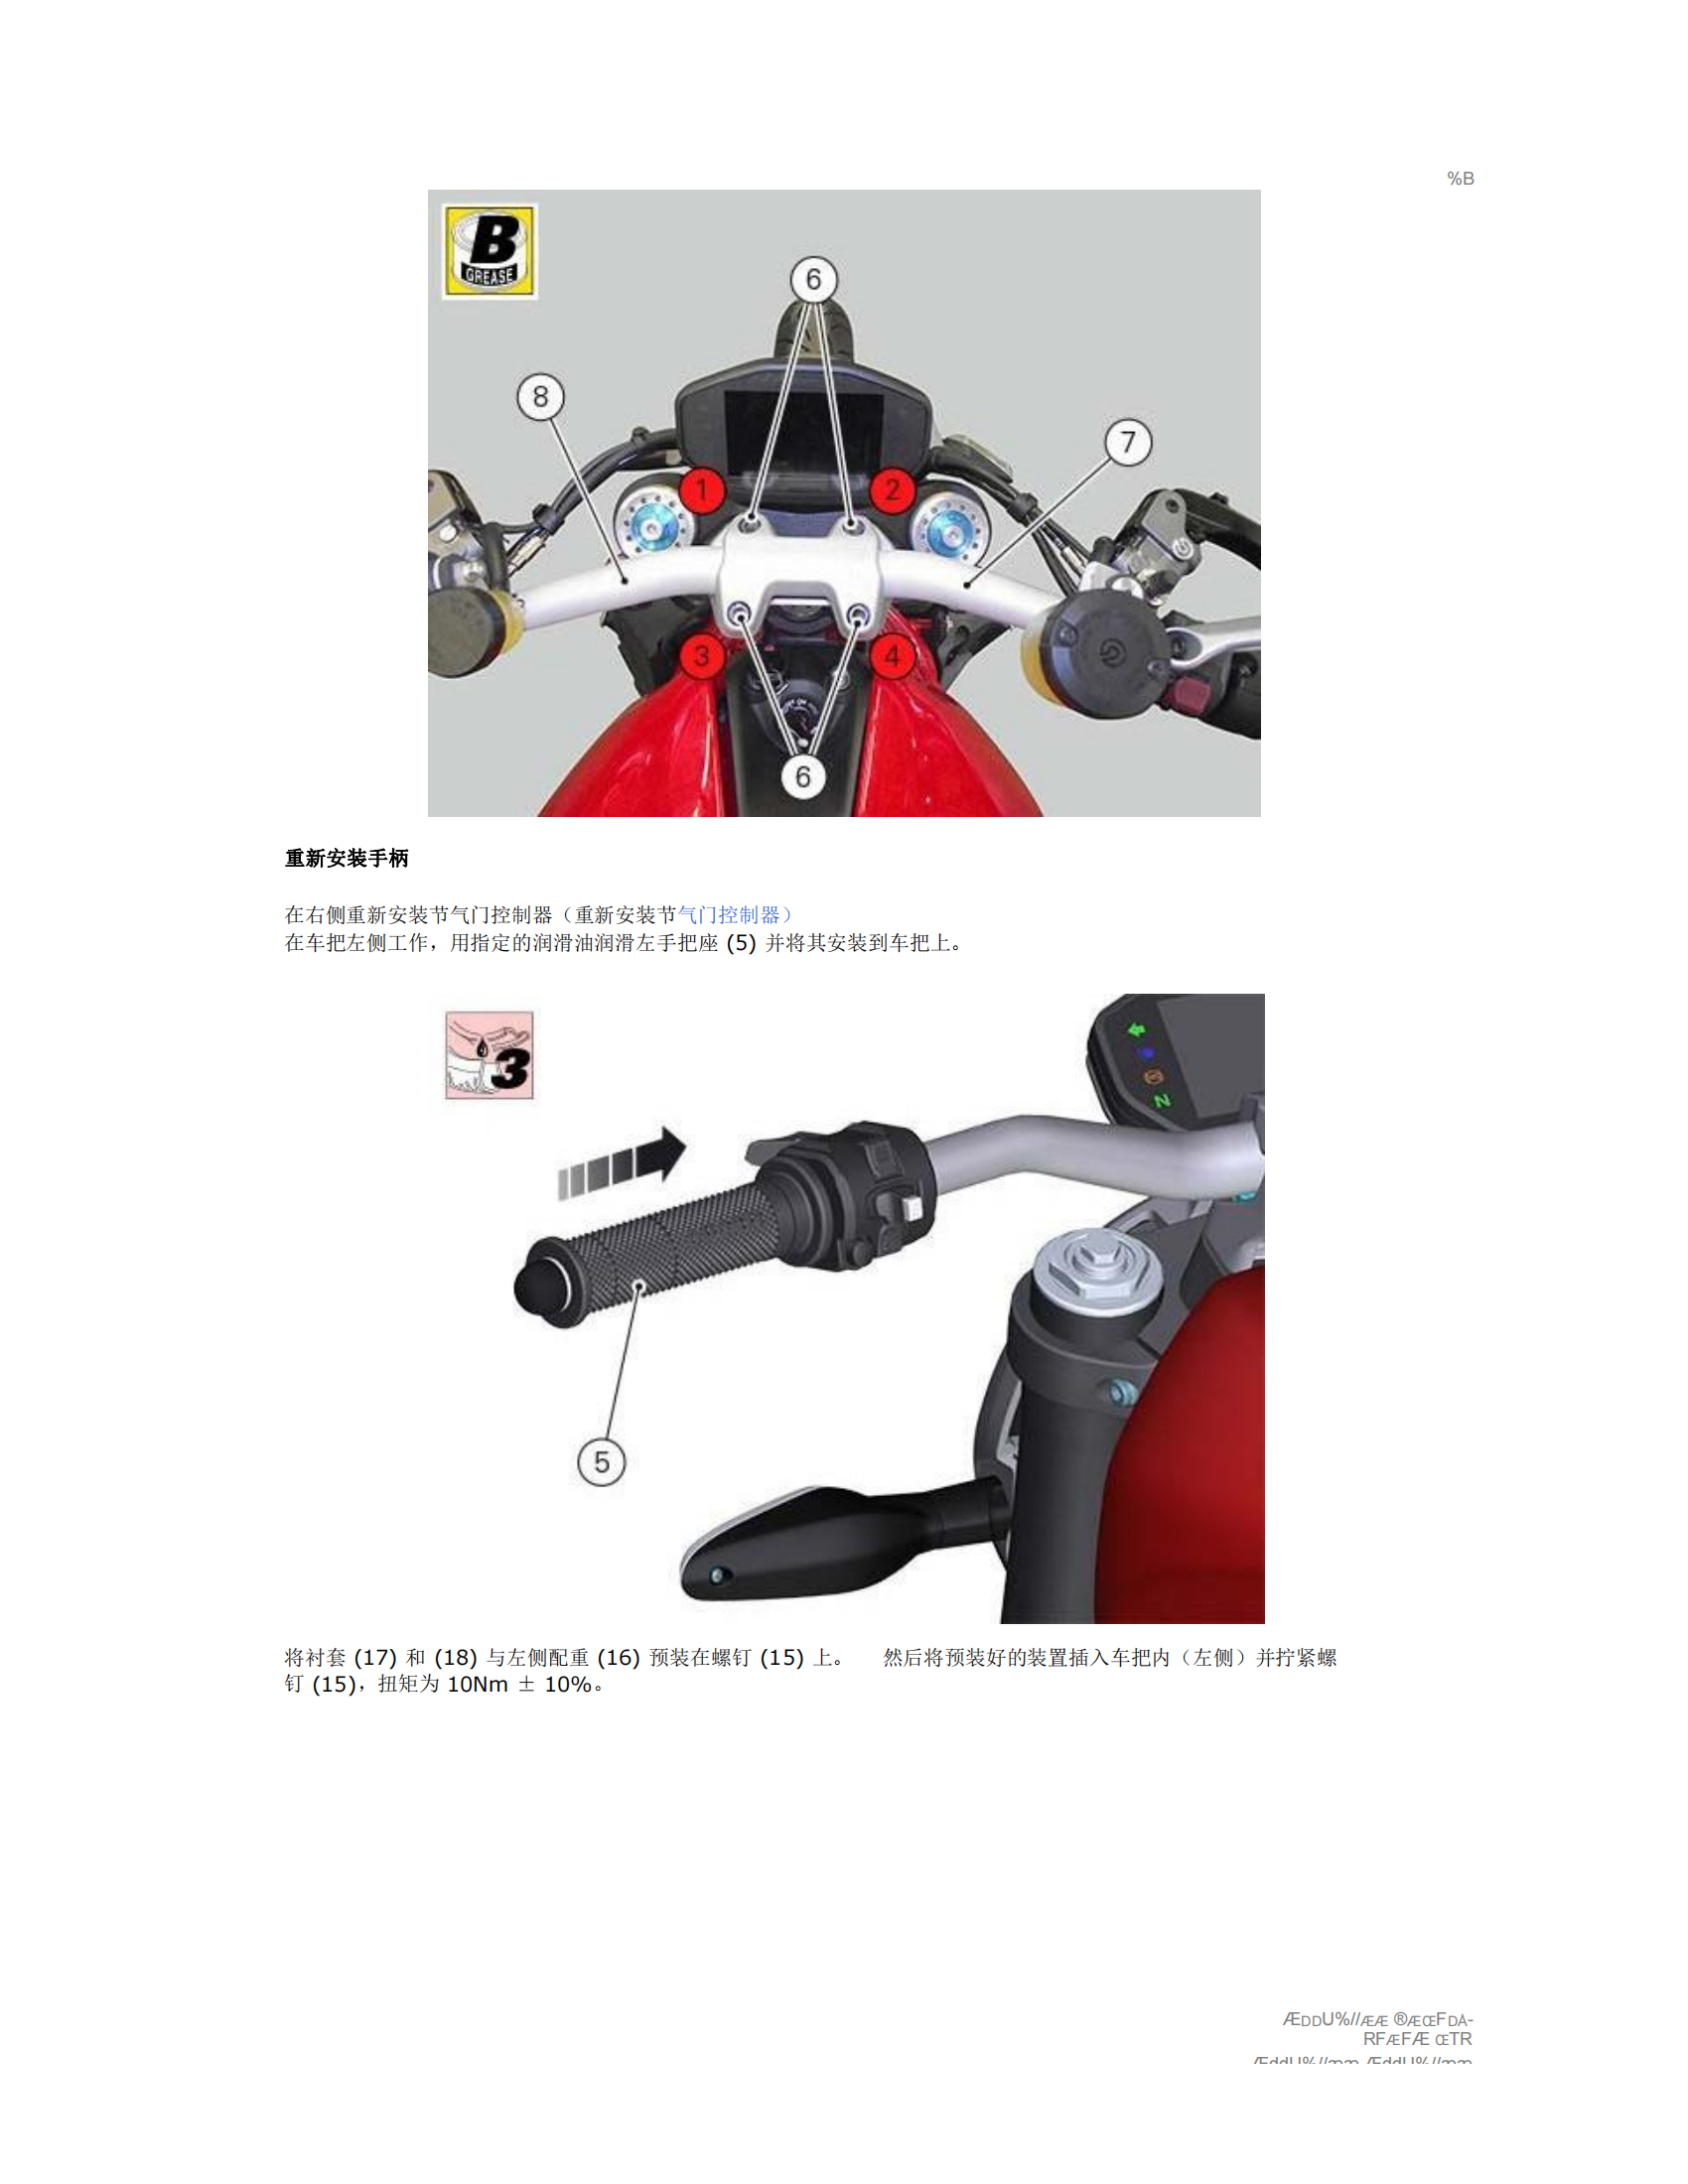 简体中文2014-2016年杜卡迪怪兽1200 Ducati monster 1200维修手册插图1